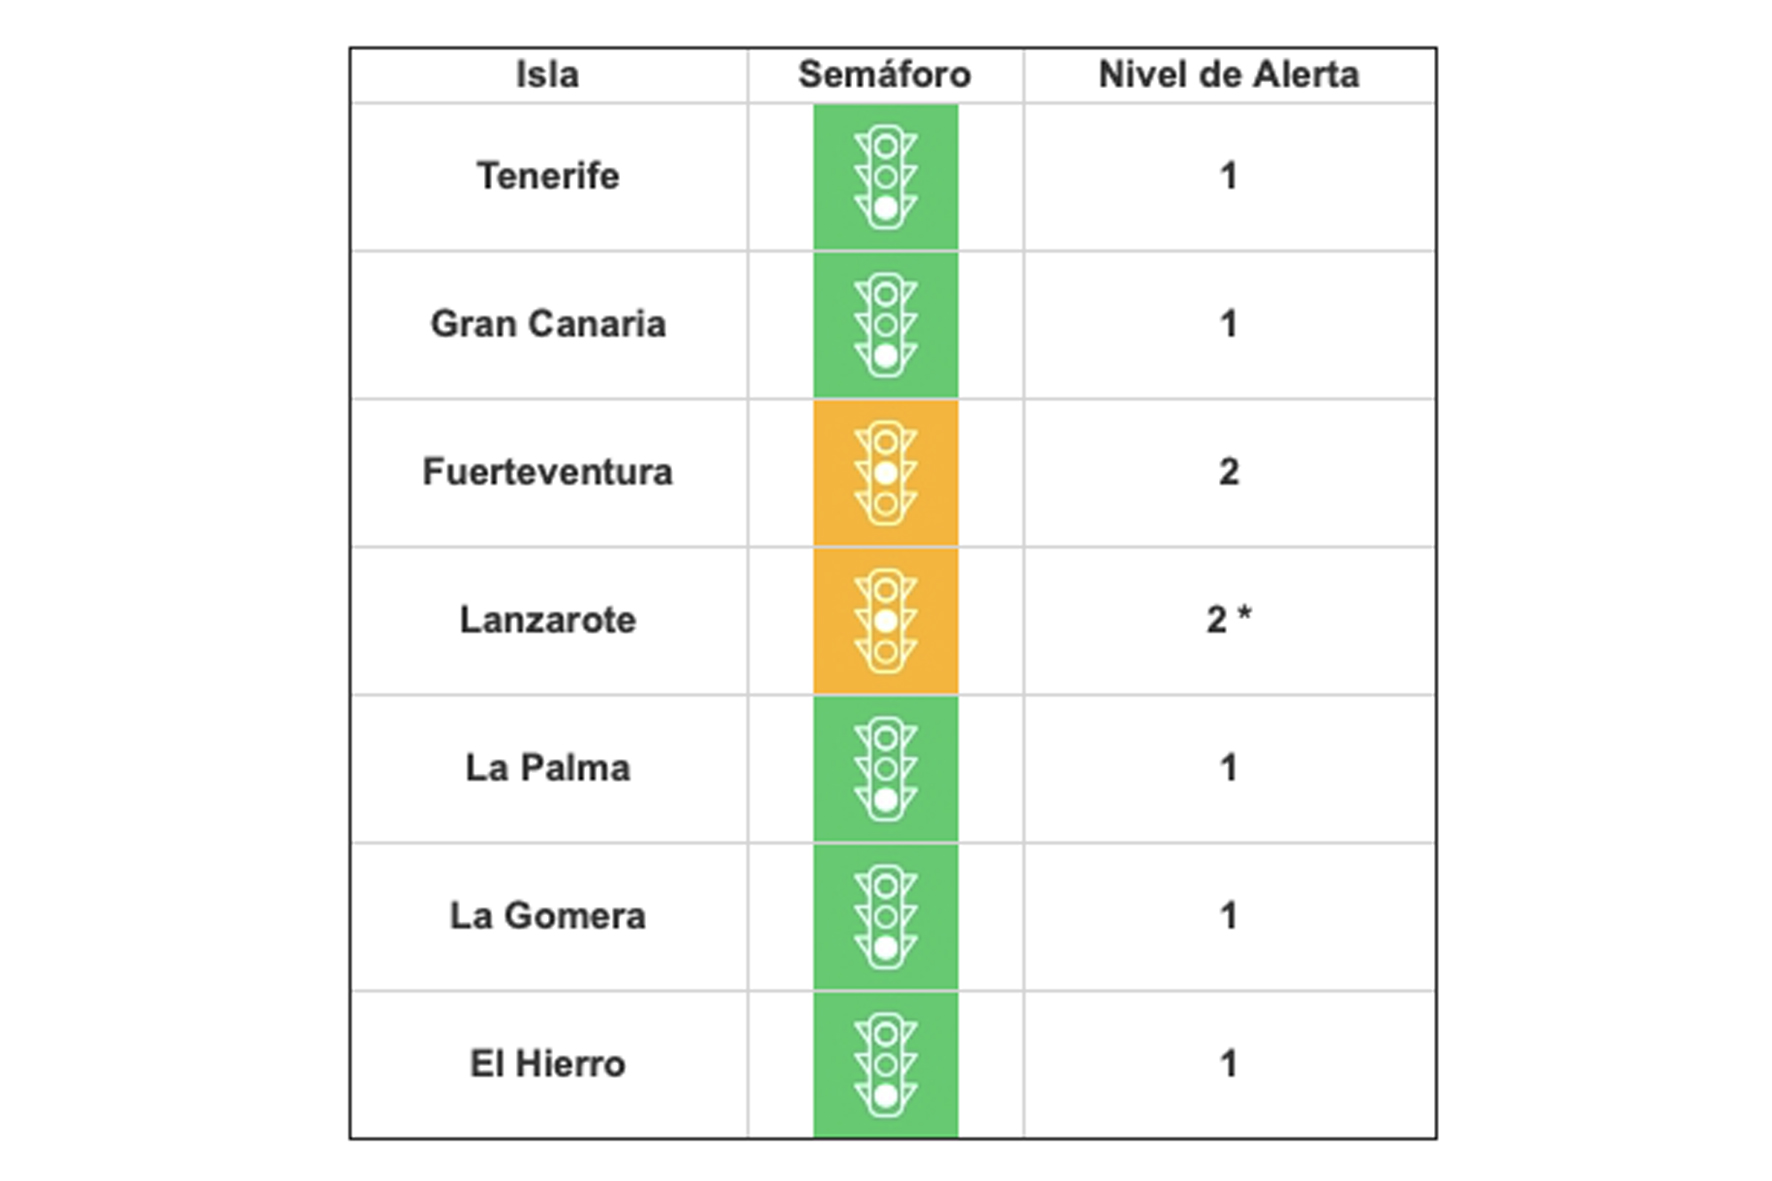 Lanzarote sube a nivel de alerta 2 ante la evolución de sus indicadores epidemiológicos, el resto de islas en nivel de alerta 1 por COVID-19